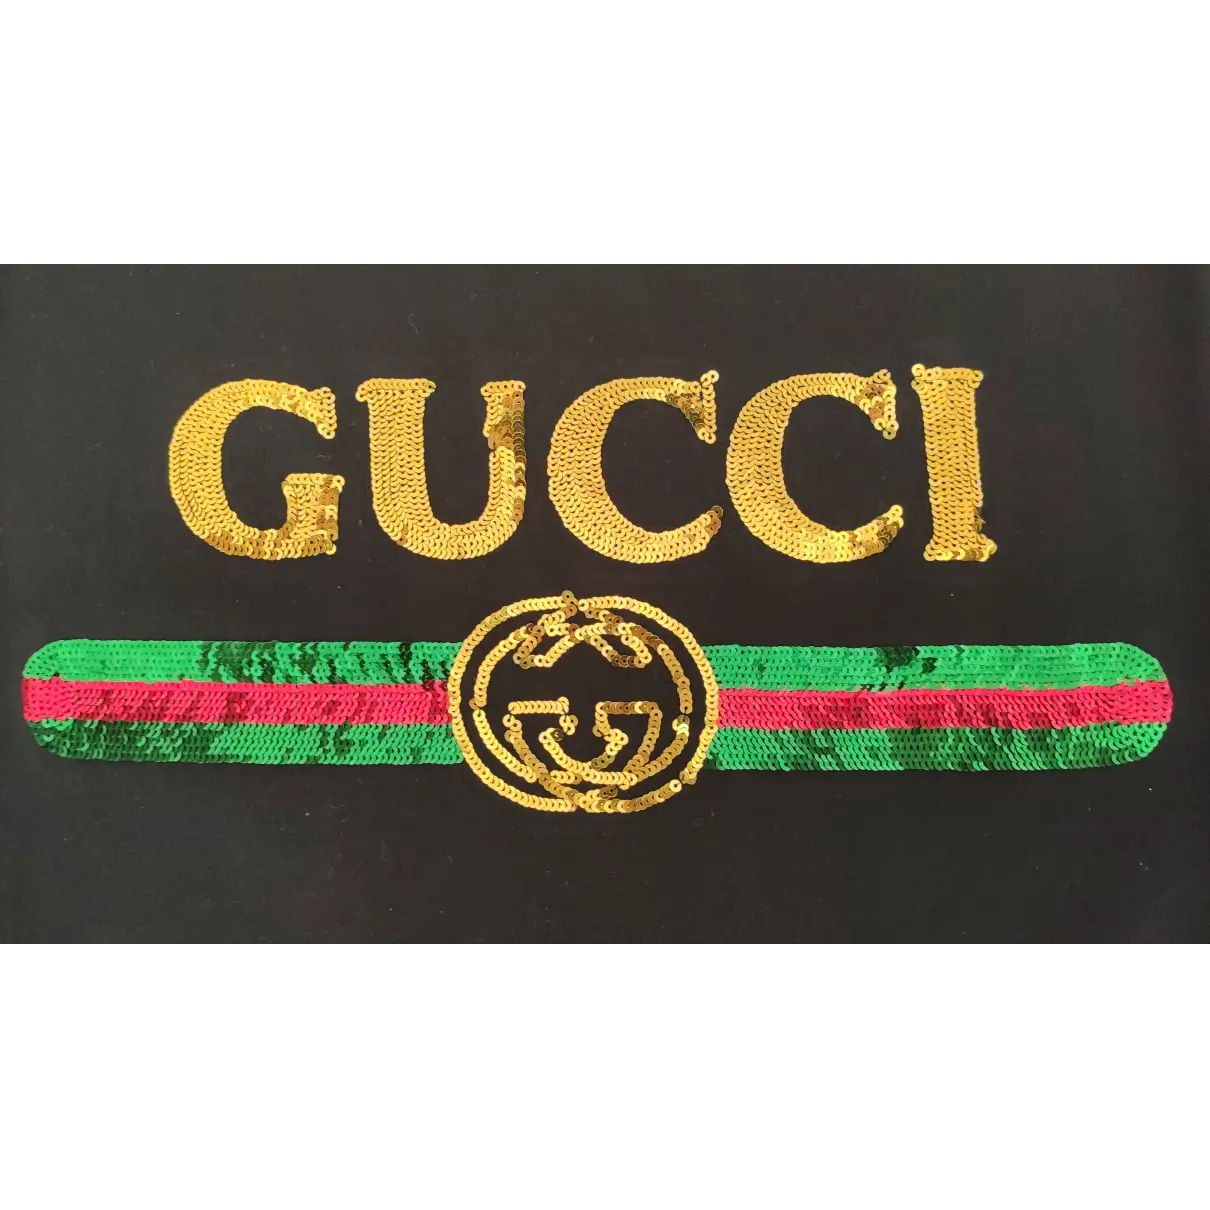 Black Viscose Top Gucci